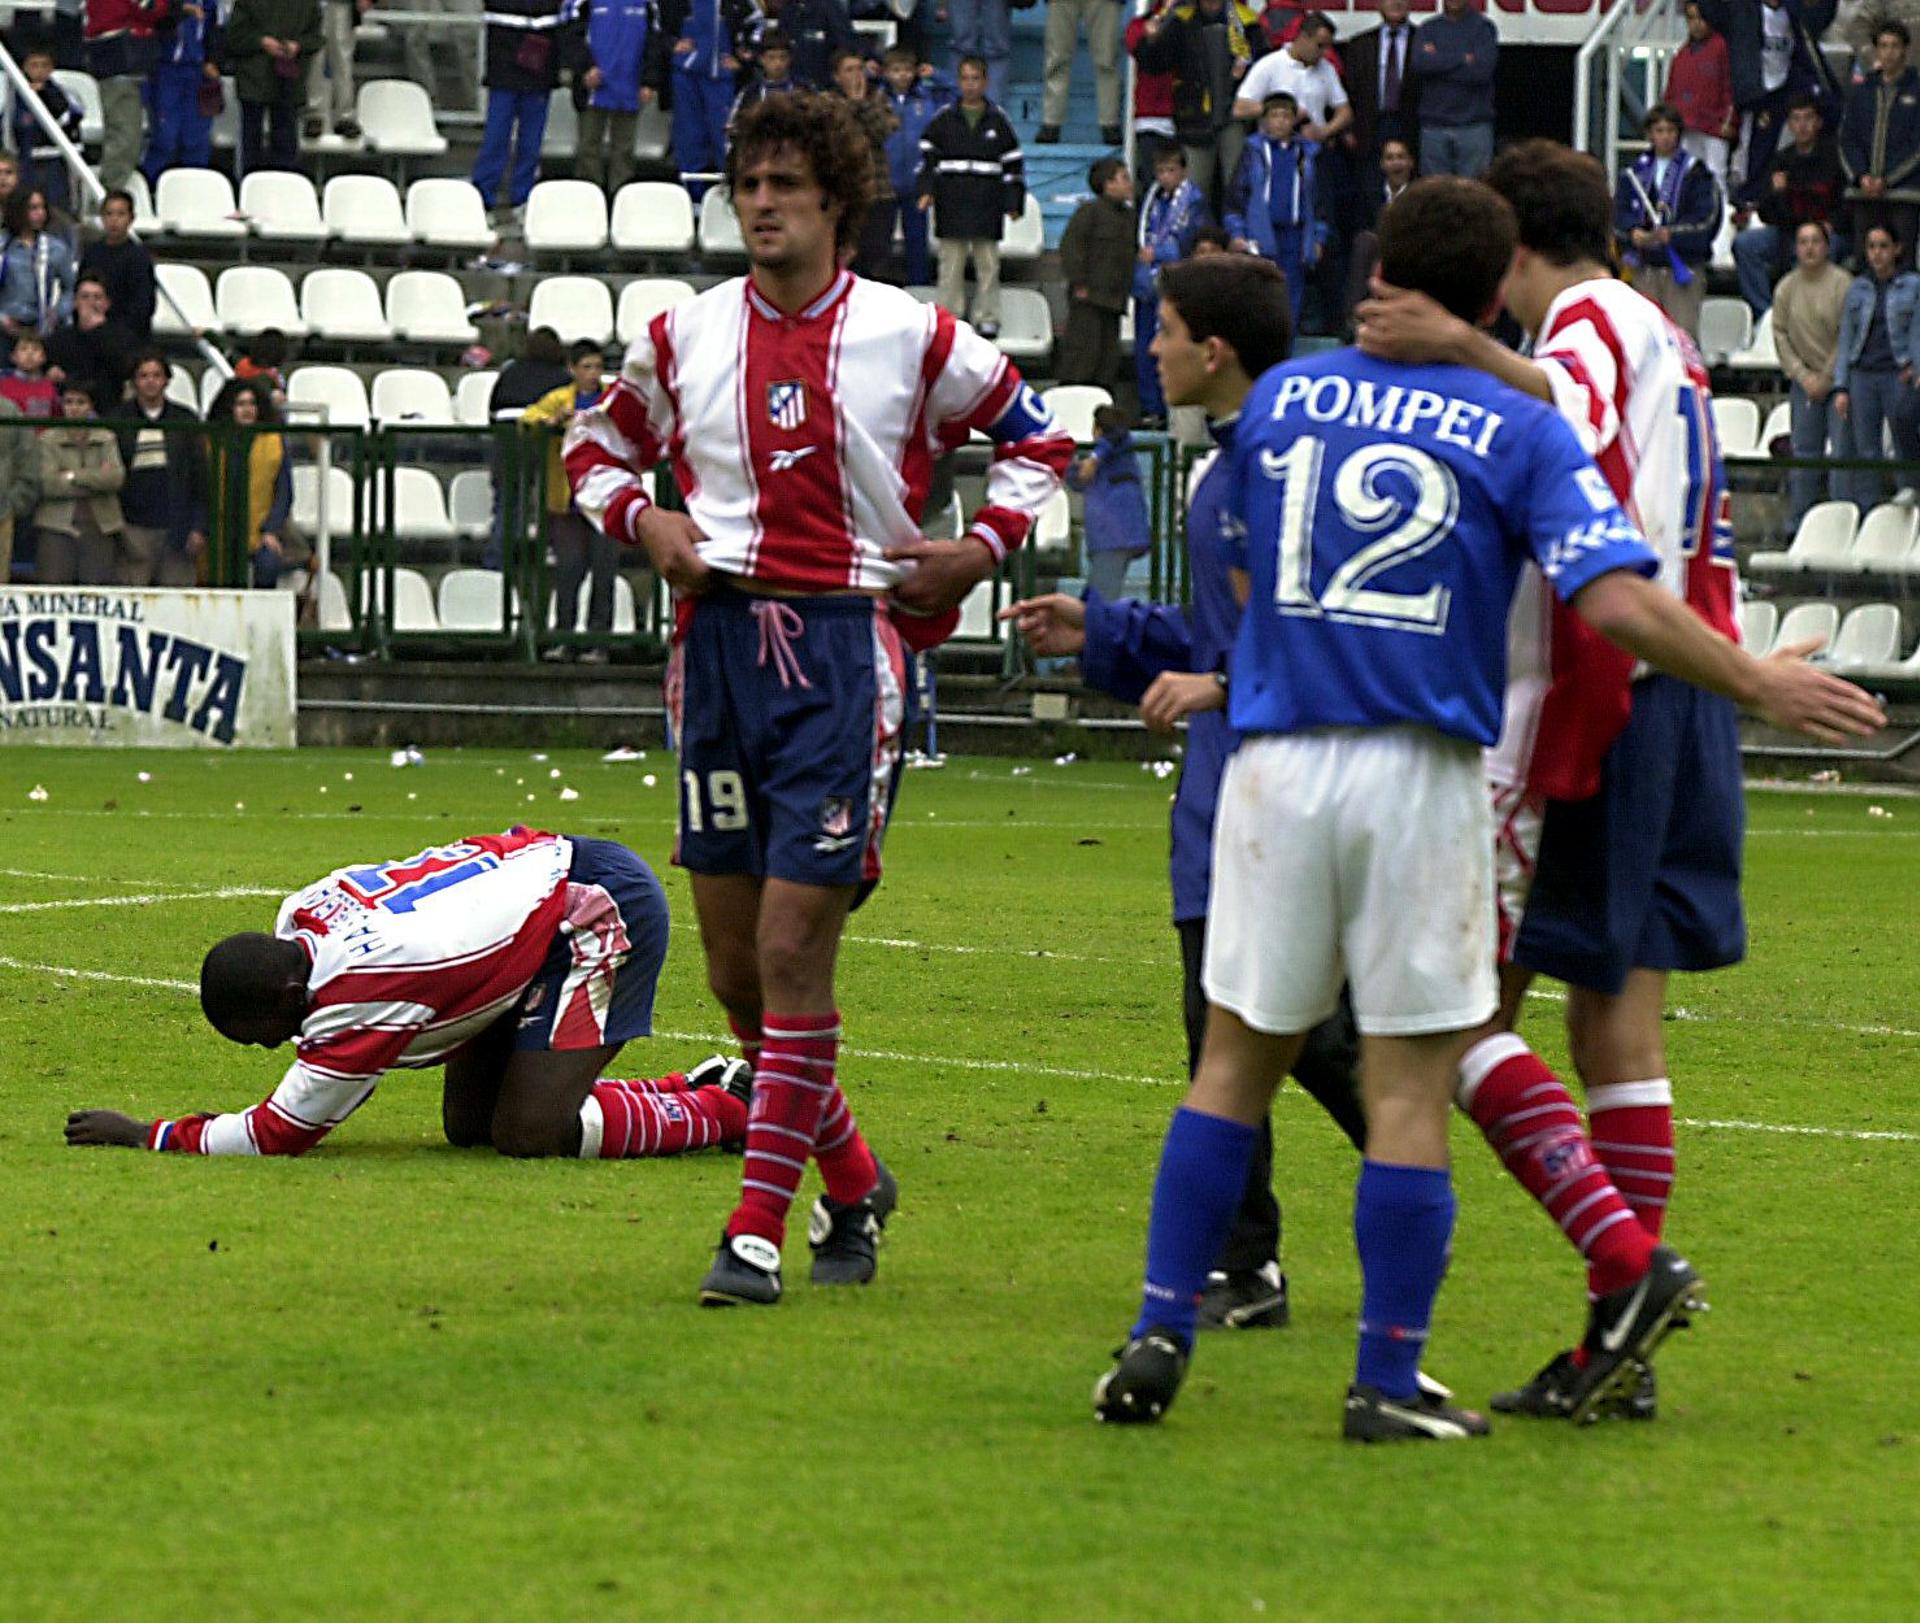 Imagen de archivo de Hasselbaink (en el suelo), Kiko (c) y Luque, entonces jugadores del Atlético de Madrid, tras consumar su descenso a Segunda División el 7 de mayo de 2002 con un empate 2-2 contra el Real Oviedo ene l Tartiere. EFE/Alberto Morante.